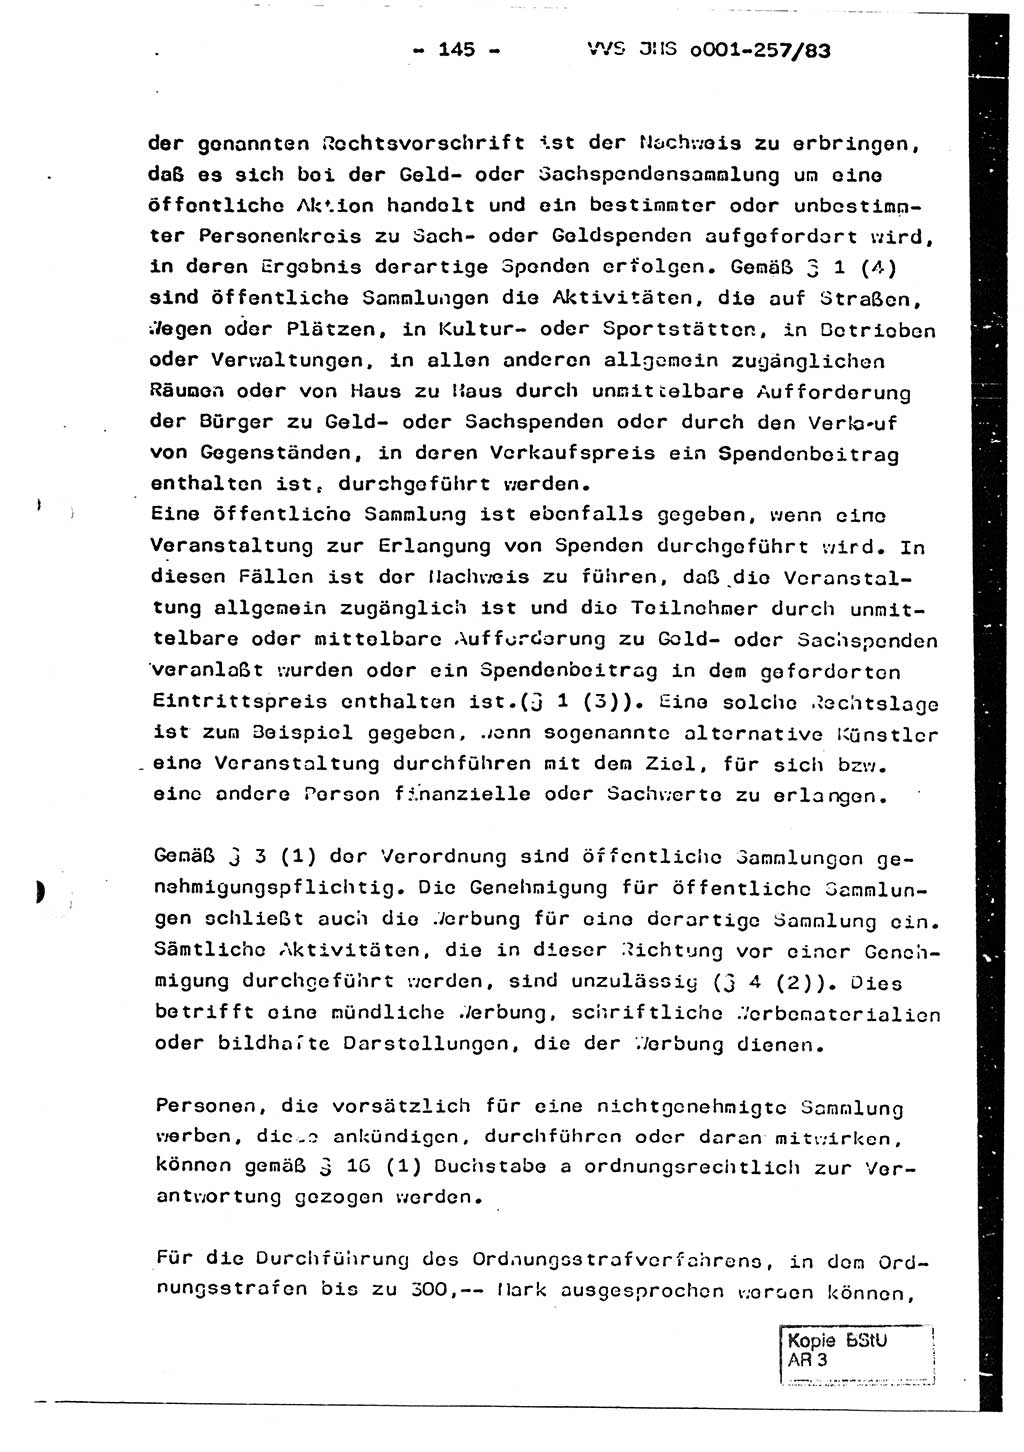 Dissertation, Oberst Helmut Lubas (BV Mdg.), Oberstleutnant Manfred Eschberger (HA IX), Oberleutnant Hans-Jürgen Ludwig (JHS), Ministerium für Staatssicherheit (MfS) [Deutsche Demokratische Republik (DDR)], Juristische Hochschule (JHS), Vertrauliche Verschlußsache (VVS) o001-257/83, Potsdam 1983, Seite 145 (Diss. MfS DDR JHS VVS o001-257/83 1983, S. 145)